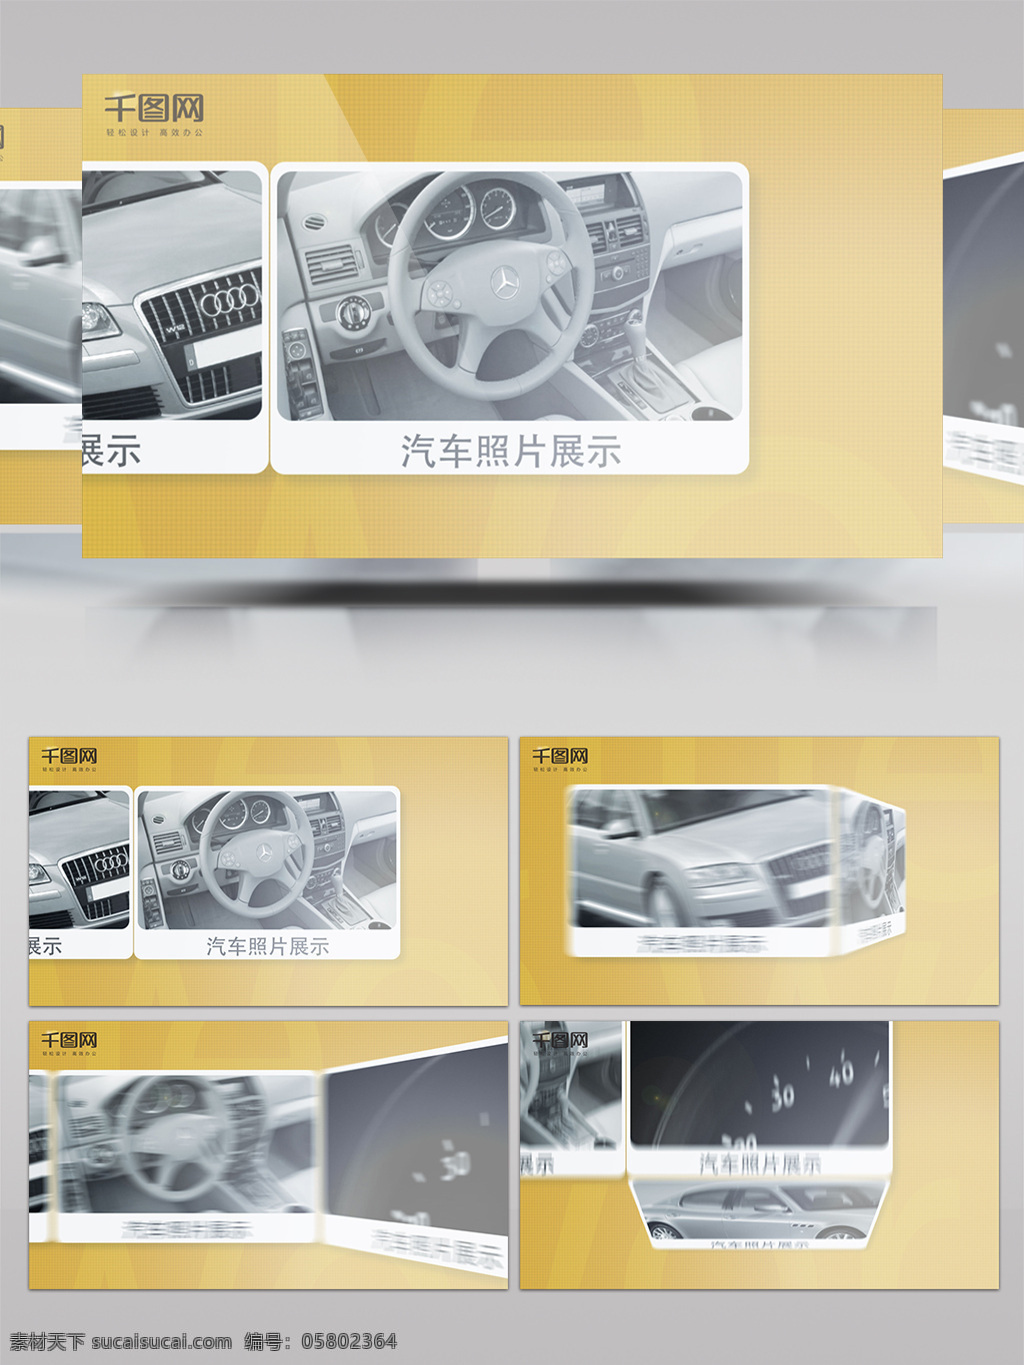 复古 汽车 照片 展示 ae 模板 相册 老照片 开场 相片 片头 视频模板 ae模板